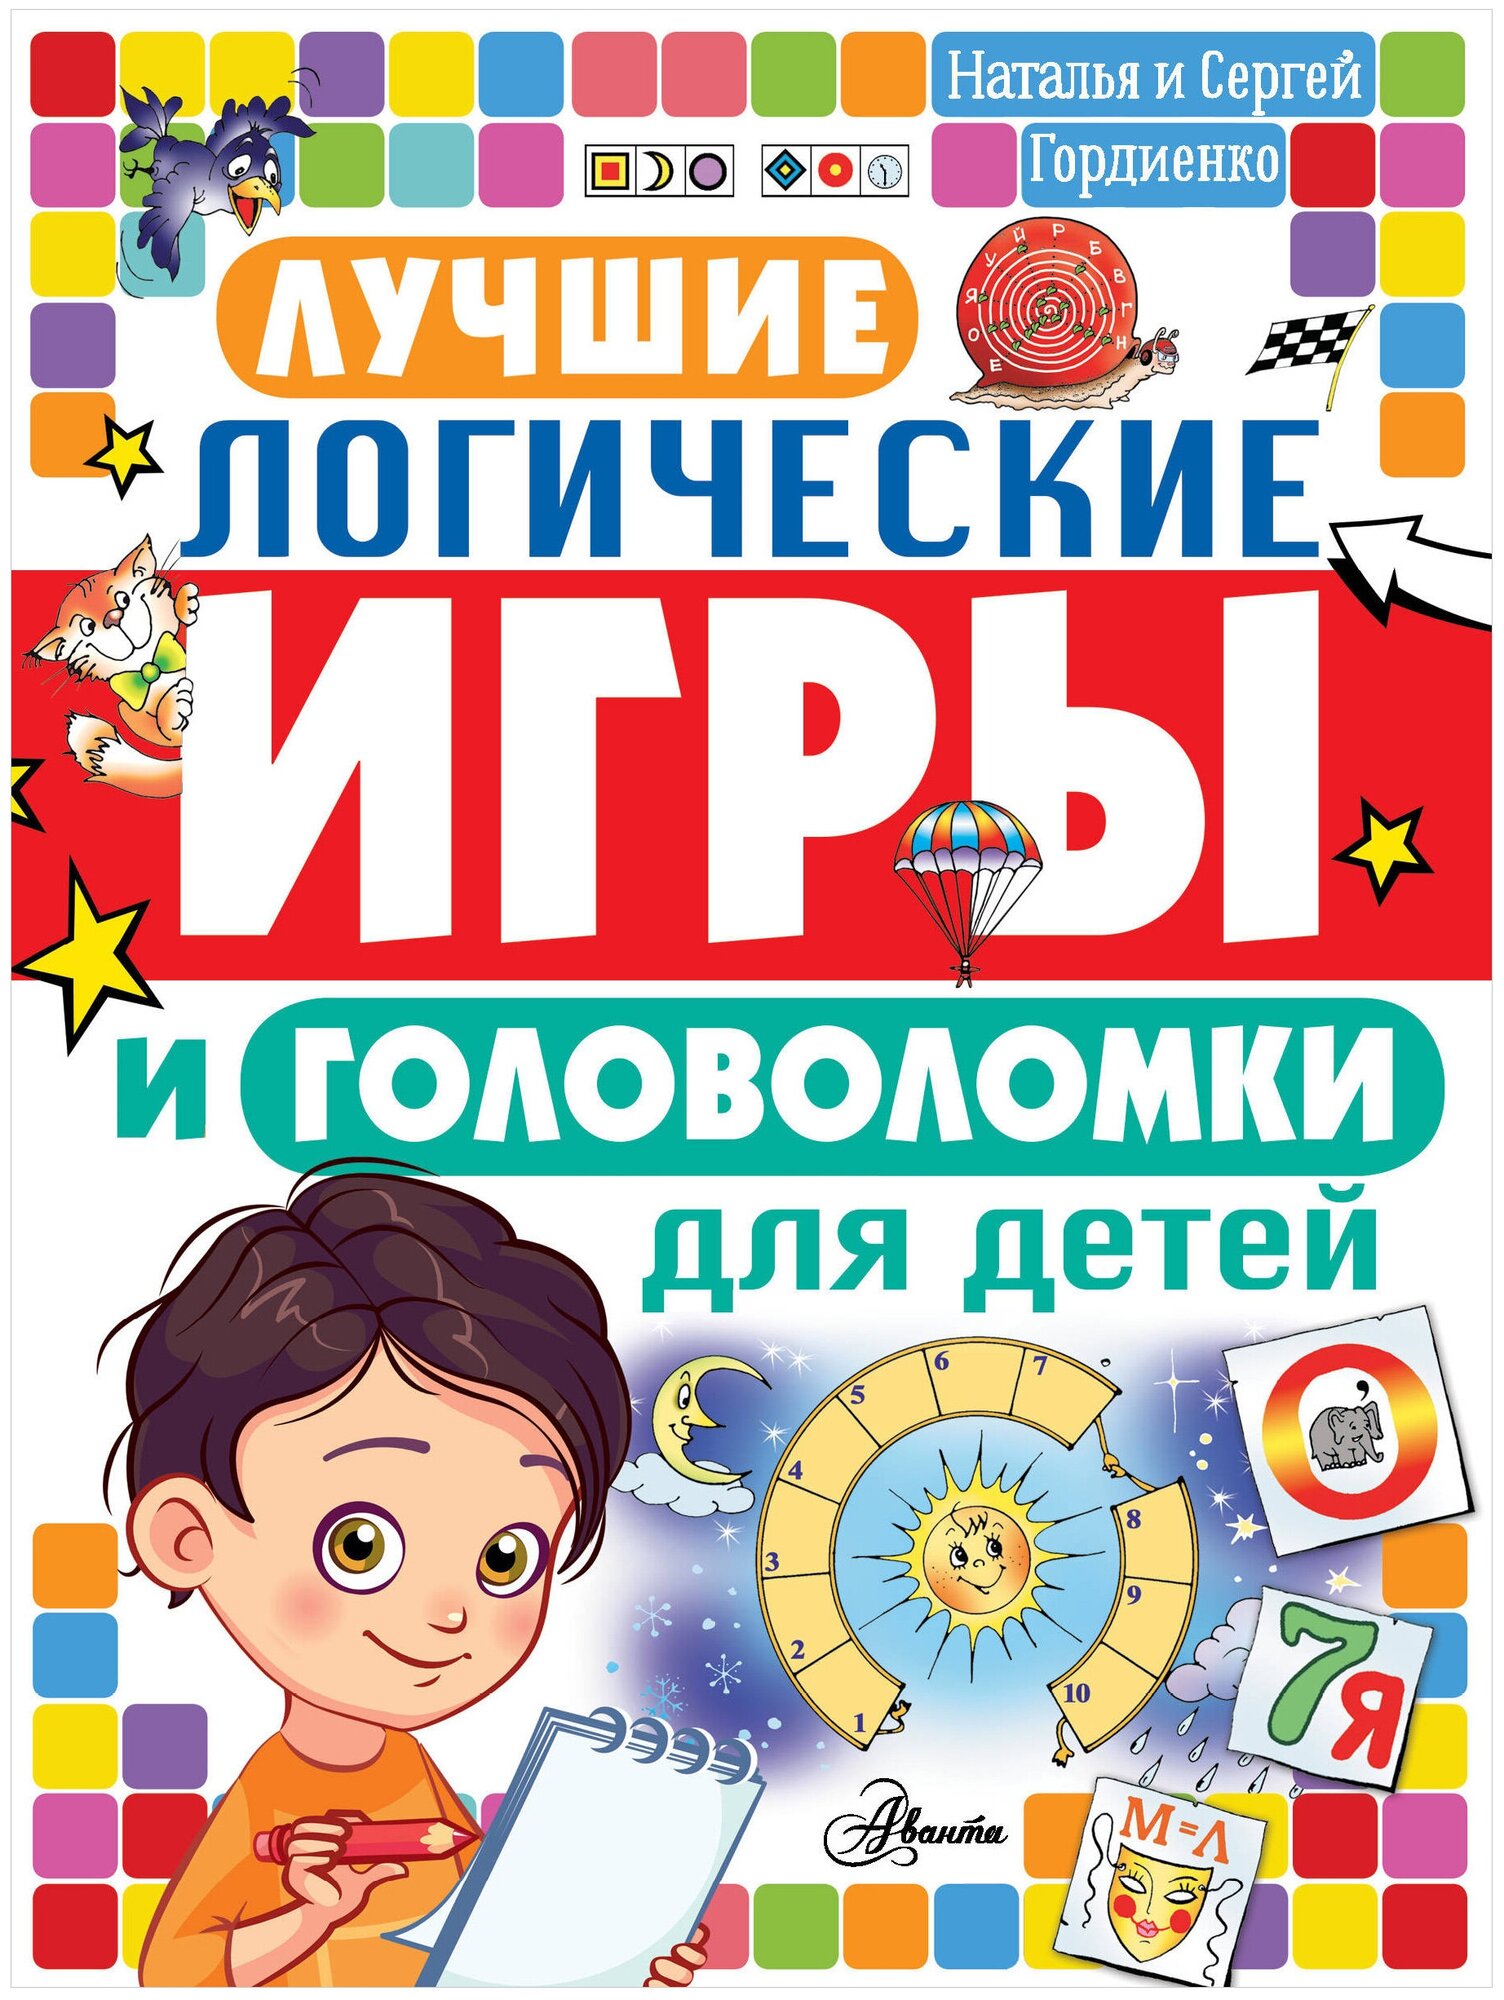 Гордиенко Н. И. Лучшие логические игры и головоломки для детей. Головоломки и логические игры для детей